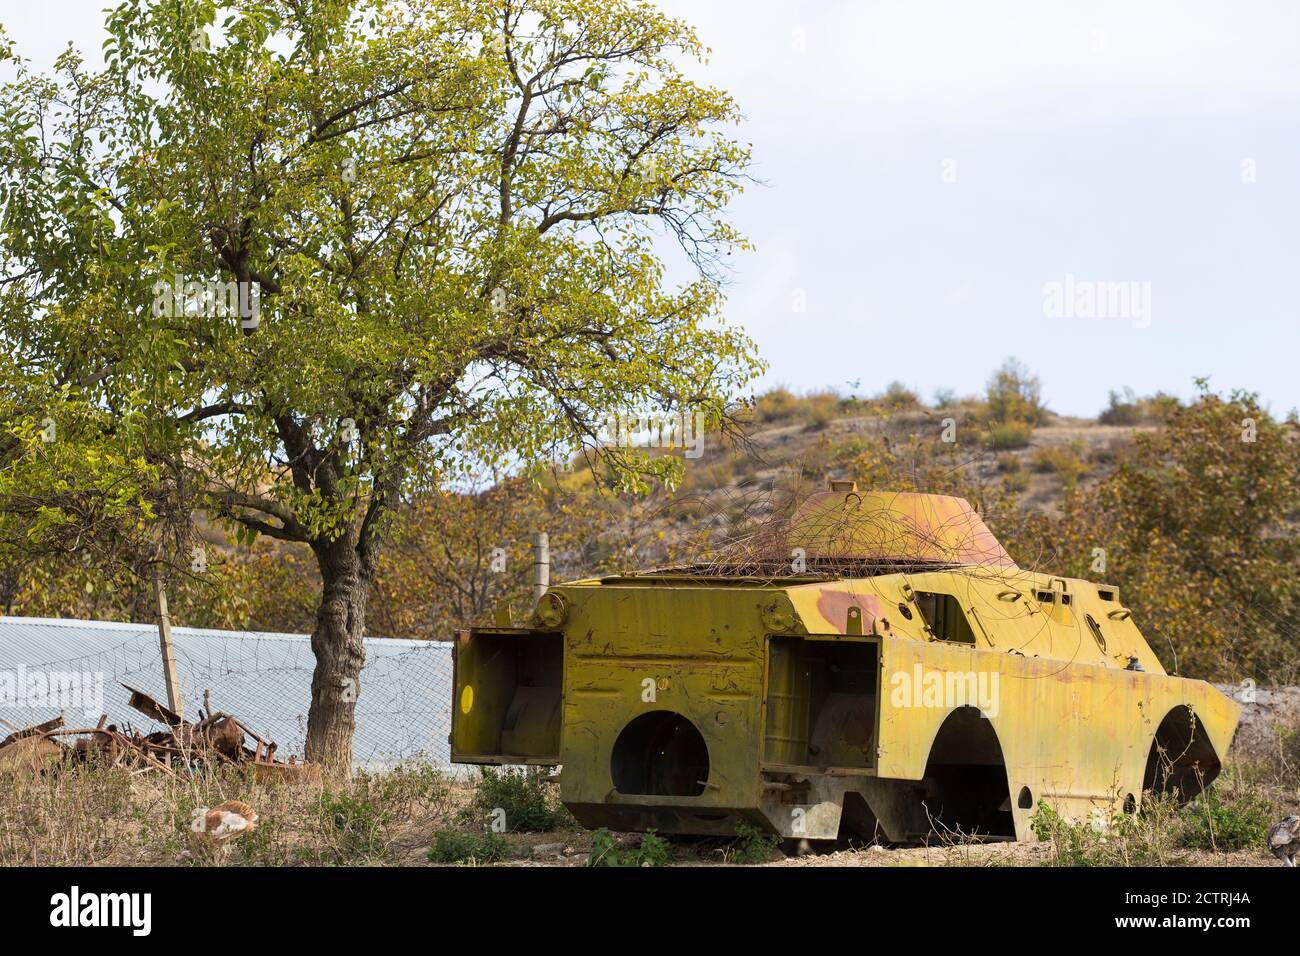 Eine in einem früheren Konflikt zerstörte Truppenwaffe wird am Straßenrand im ländlichen Ngarno Karabach zurückgelassen, einem umstrittenen und bekämpften Gebiet. Stockfoto